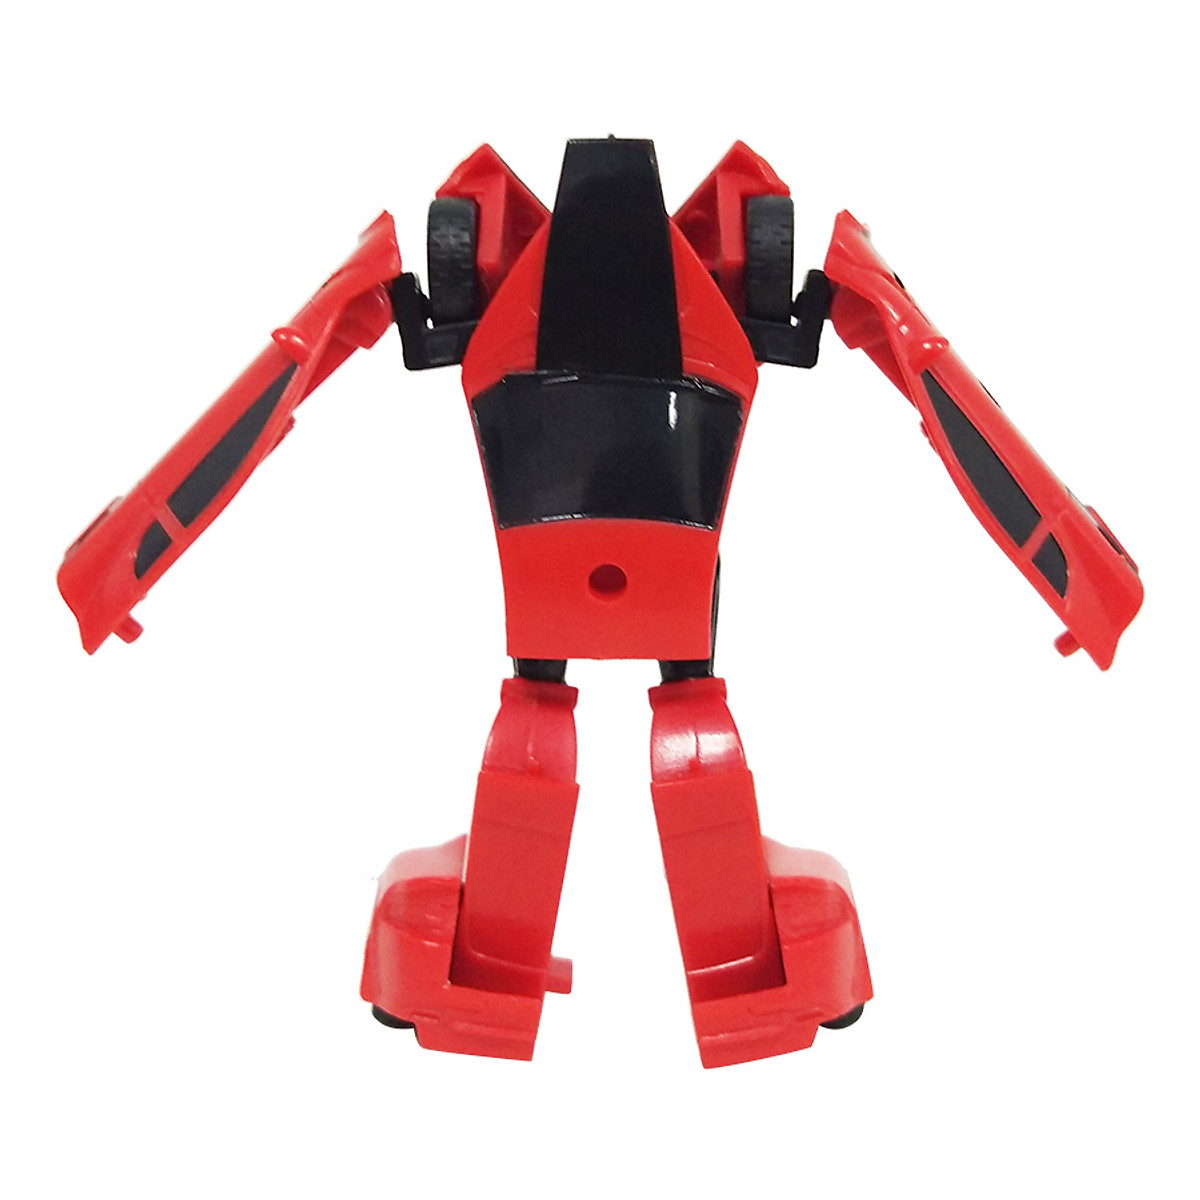 Hot Mô Hình Stinger Hasbro - Robot biến hình Transformer Kỷ nguyên hủy diệt cho bé